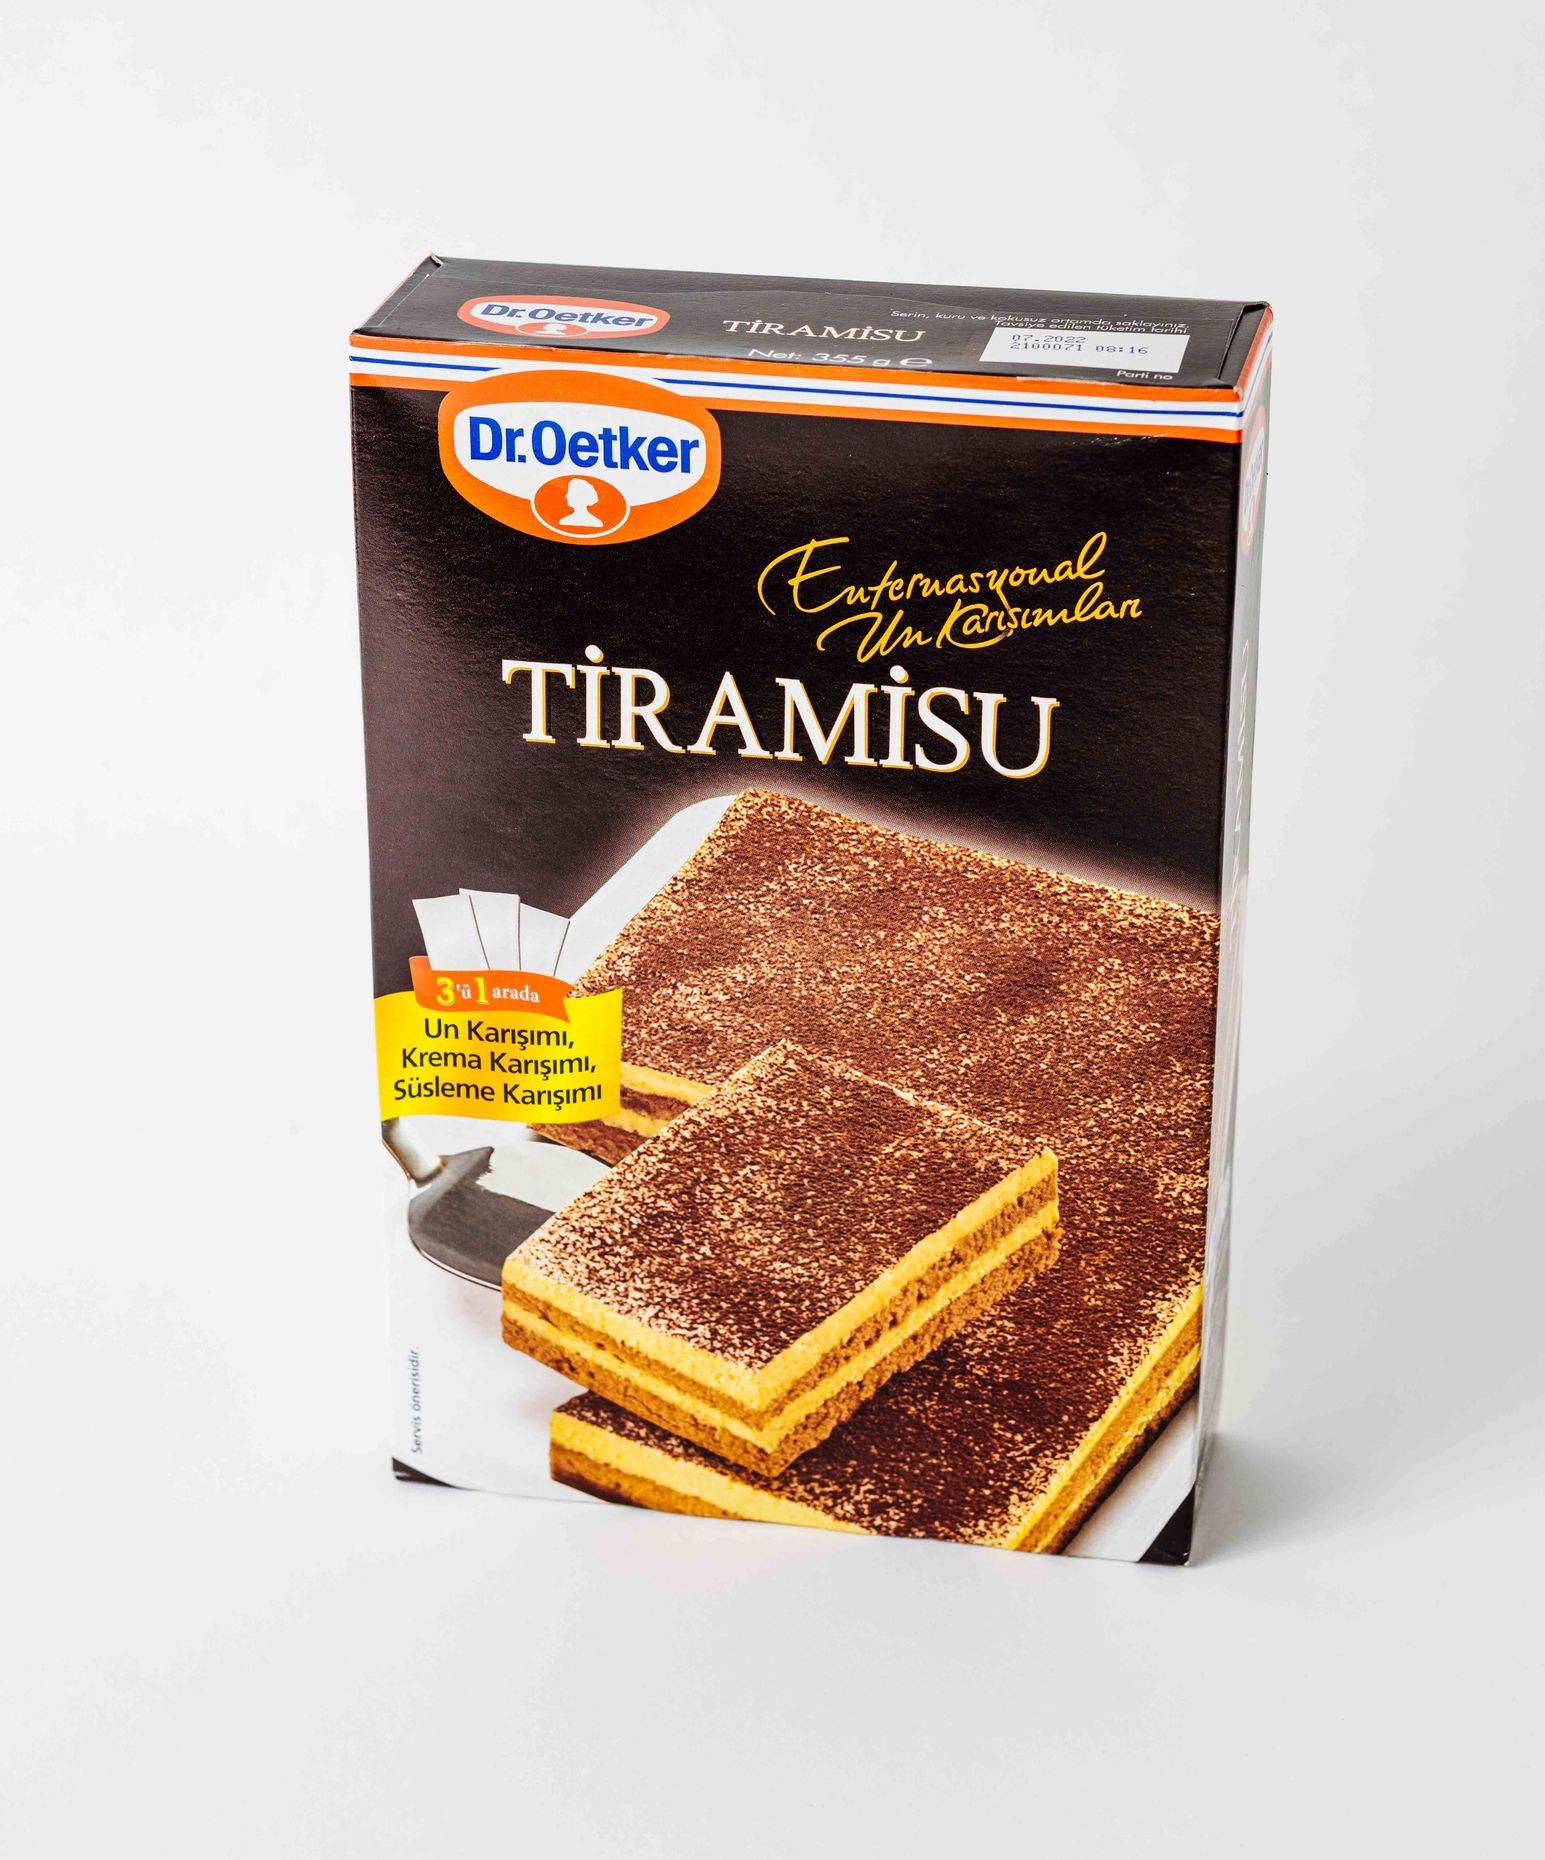 Dr. Oetker Tiramisu Dessert Mix